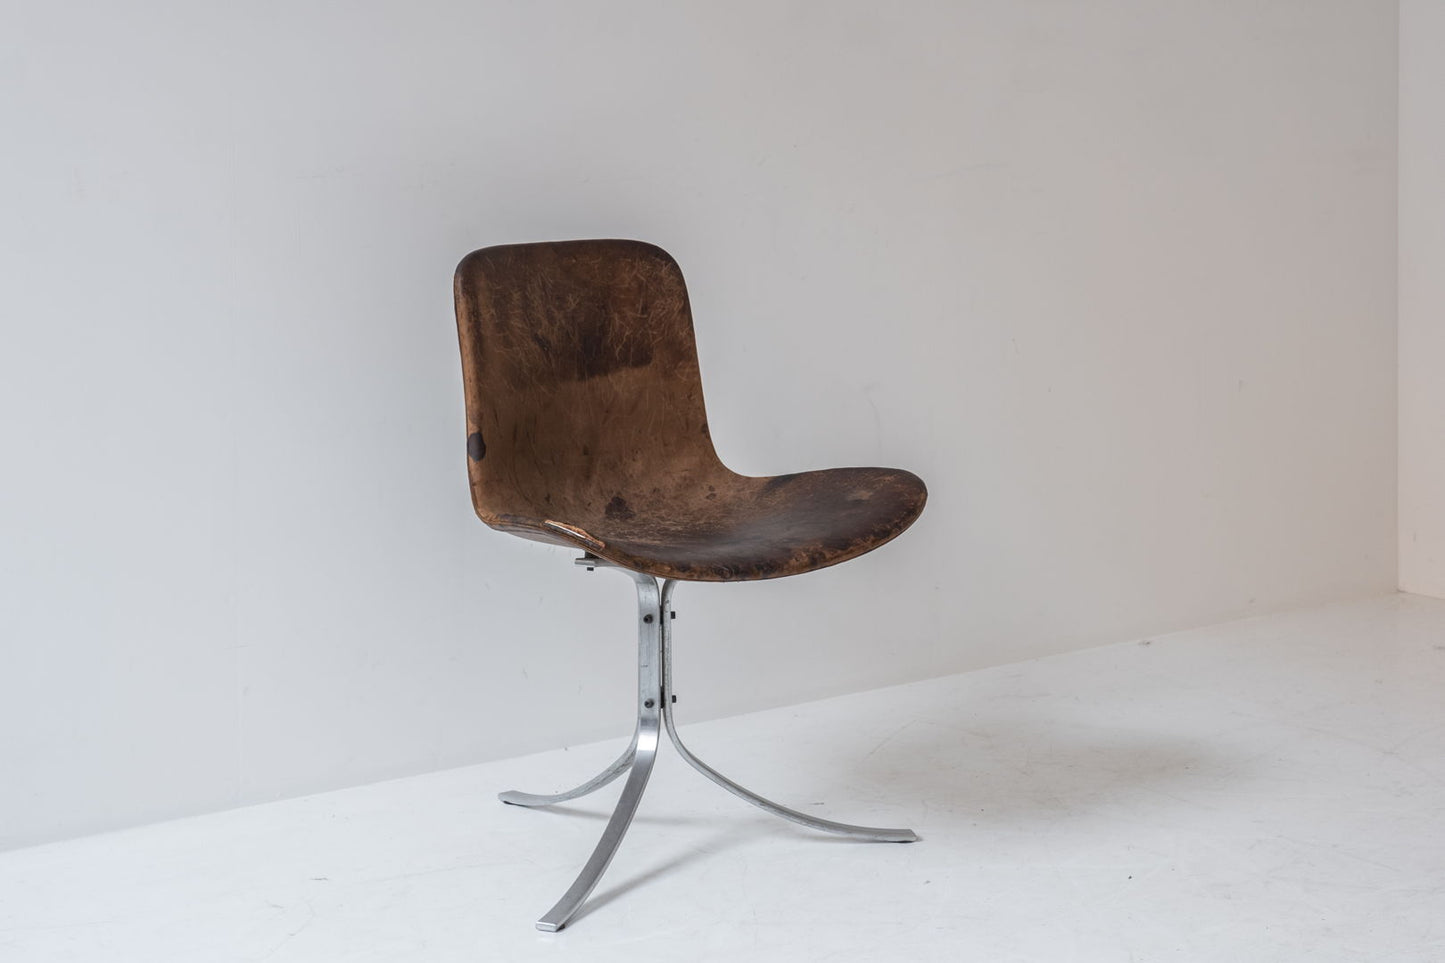 First edition PK9 tulip chair by Poul Kjaerholm for E. Kold Christensen, Denmark 1961.